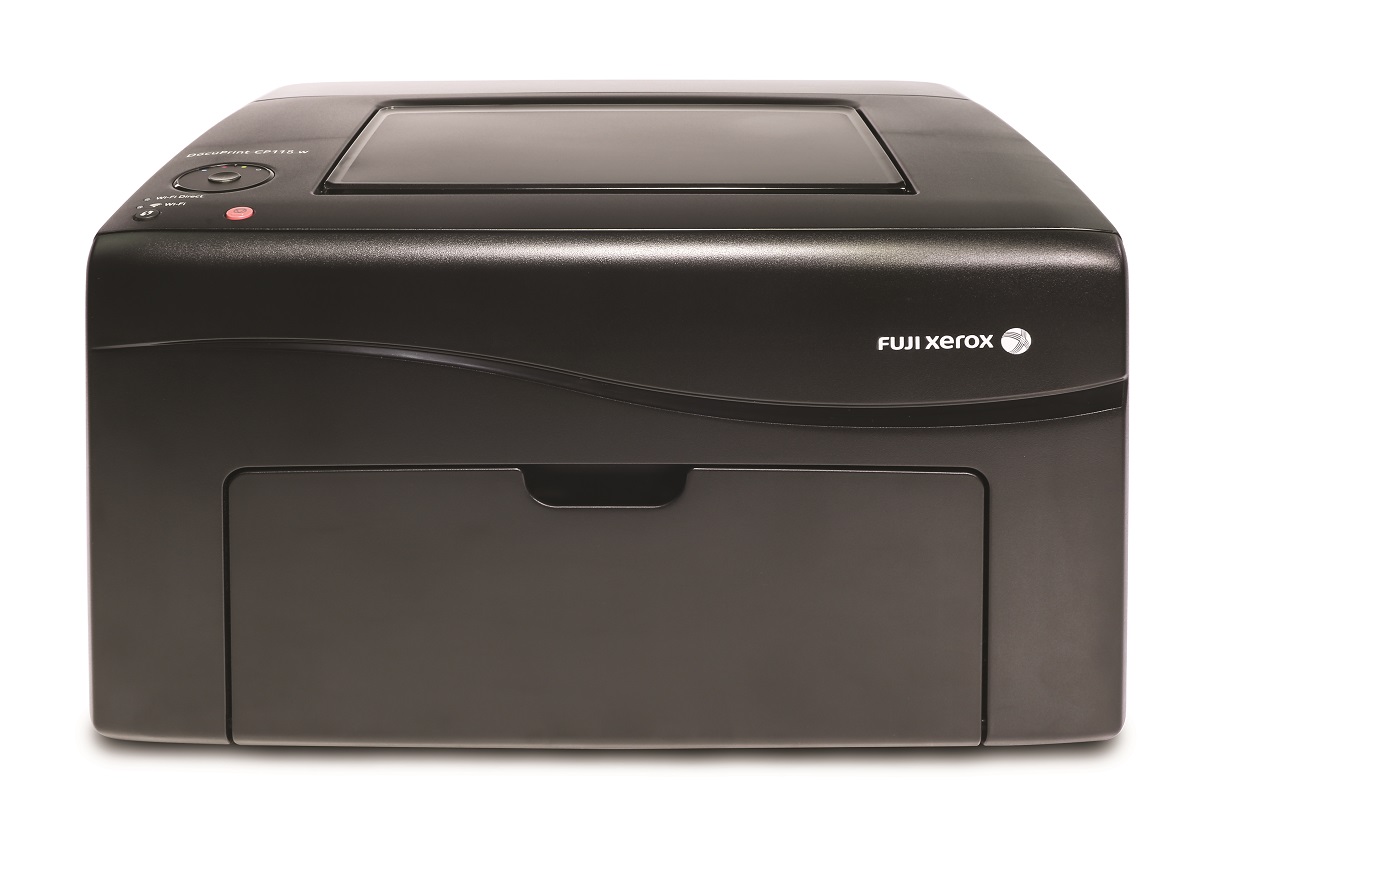 富士施乐(Fuji Xerox)DocuPrint CP118w A4彩色激光无线打印机